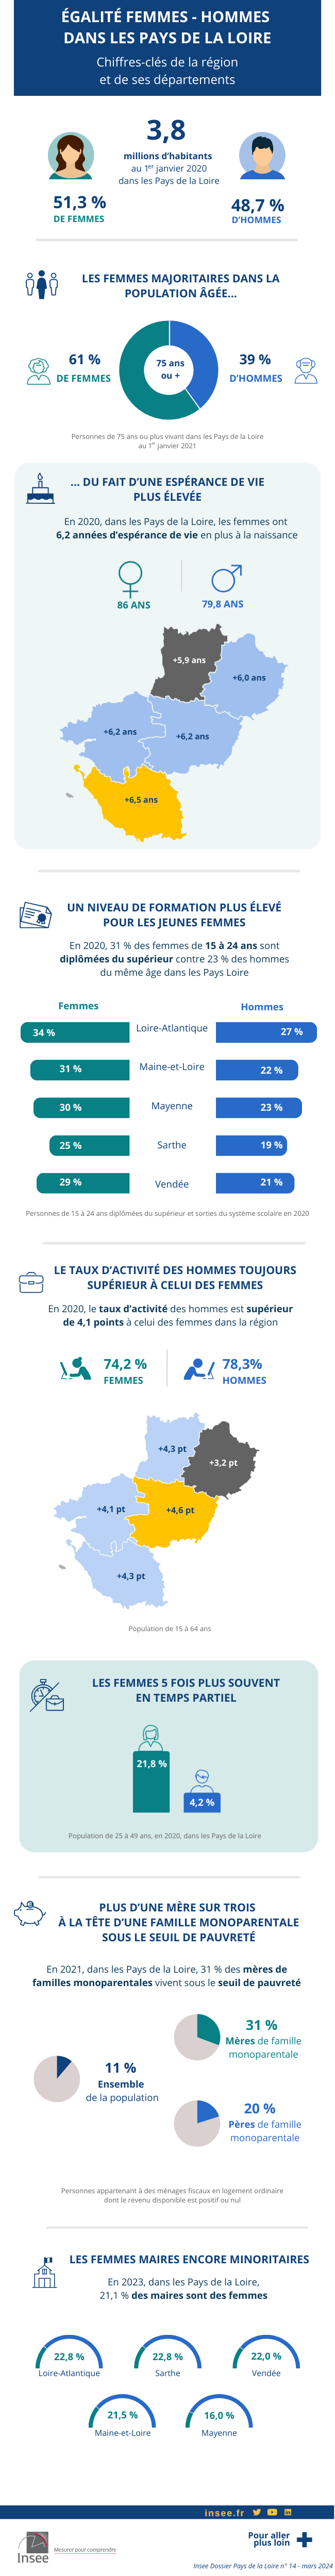 Égalité femmes-hommes dans les Pays de la Loire